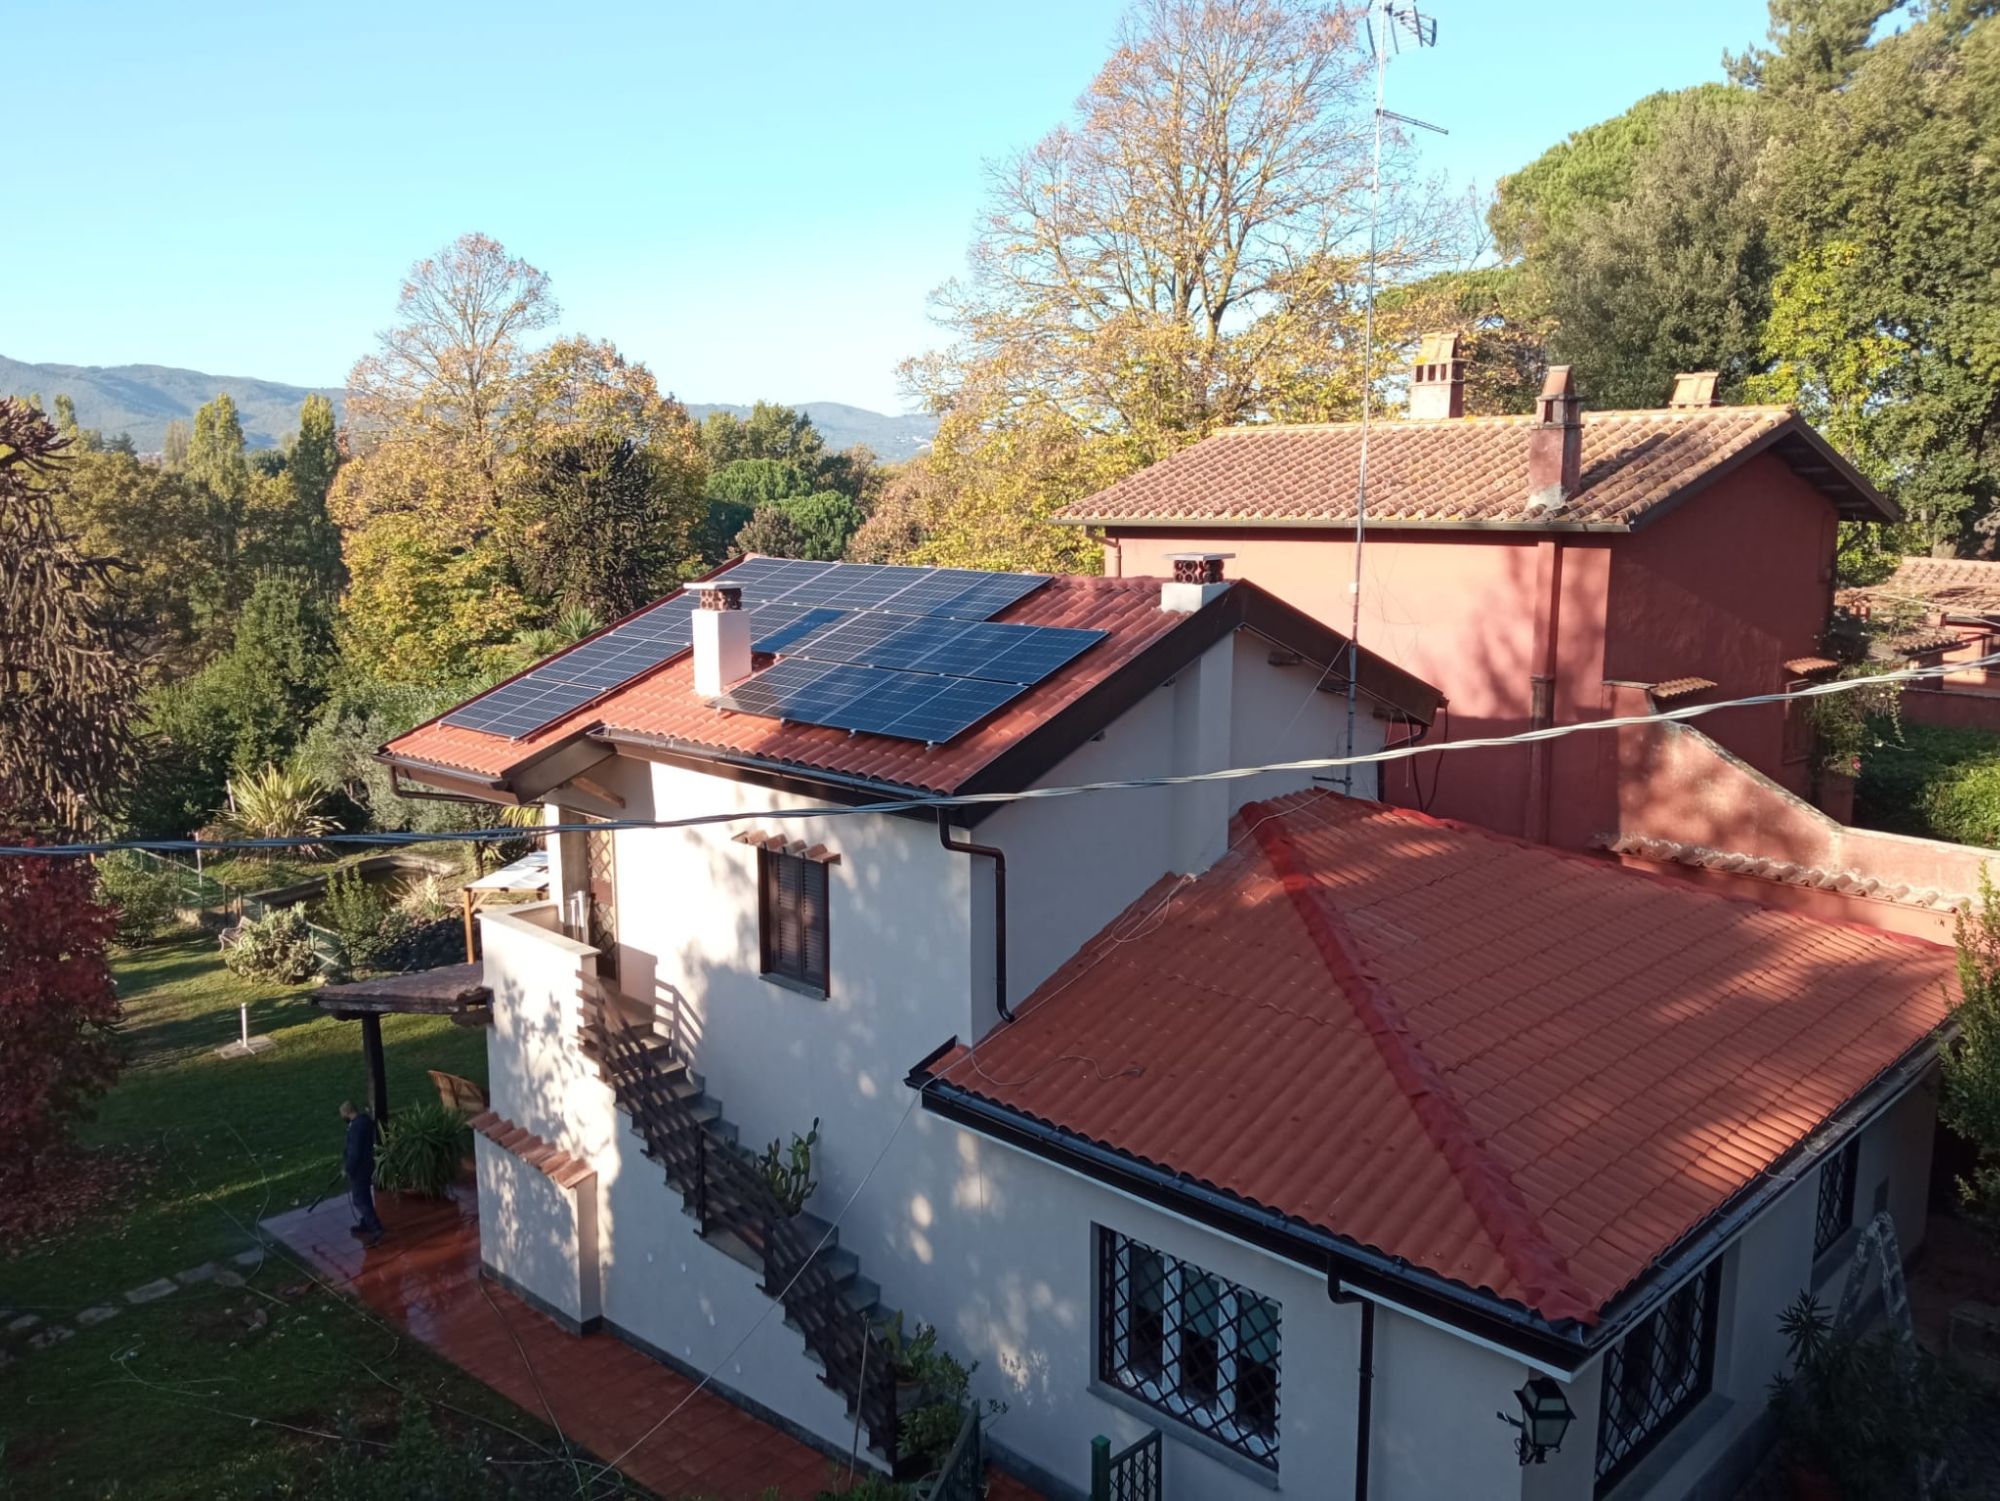 Villa a Zagarolo (RM) - Intervento di miglioramento sismico e di contenimento energetico (2)